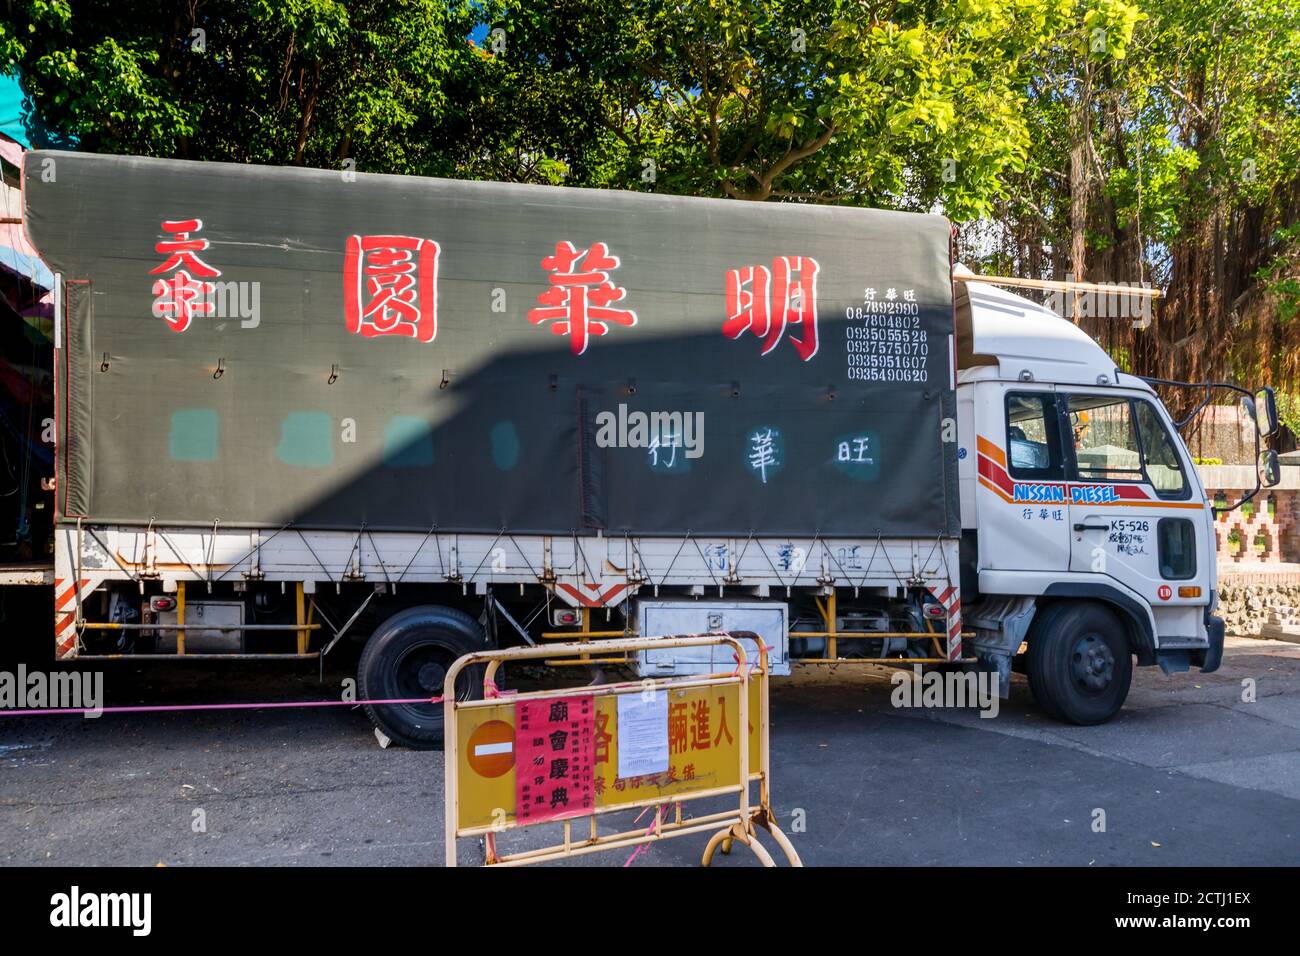 Palcoscenico il camion di un tradizionale Teatro Cinese di strada, che sta intrattenere la gente locale in un posto pubblico in An Ping, Tainan, Taiwan Foto Stock